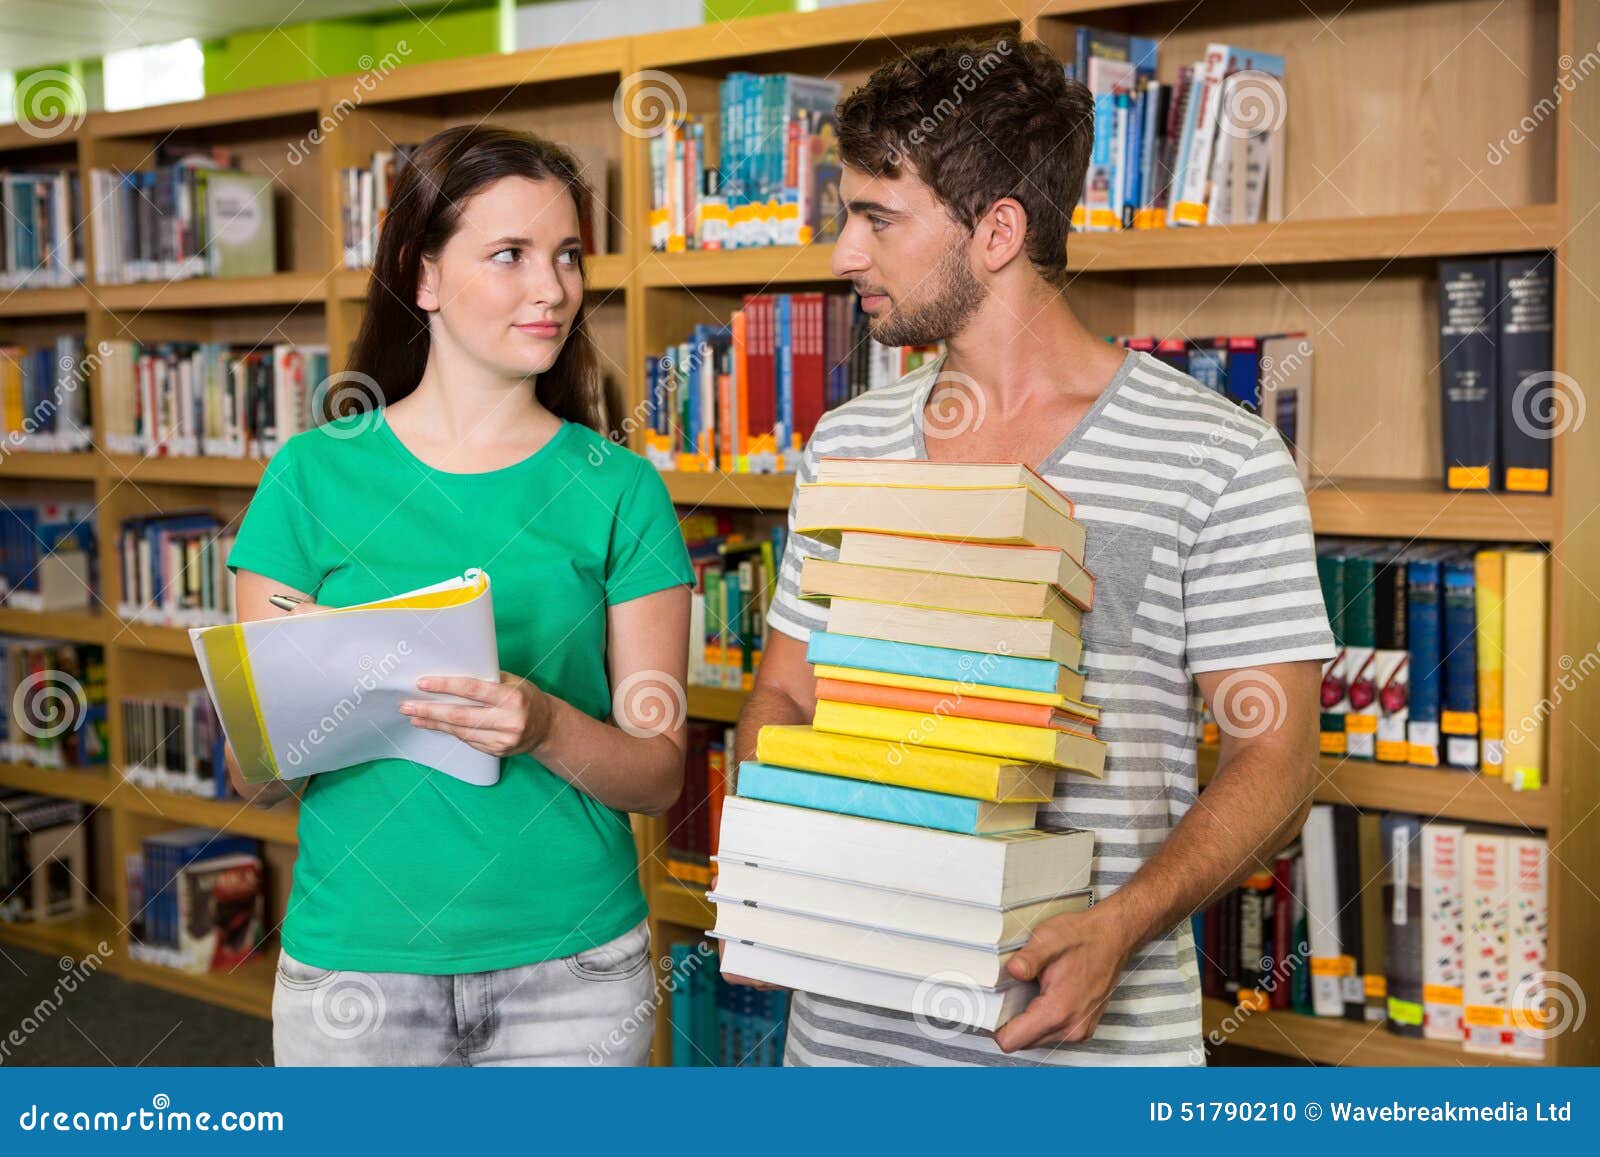 Бесплатные библиотеки для студентов. Студенты в библиотеке. Фотосессия в библиотеке студенты. Студент с кучей книг. Студентка с грудой книг.